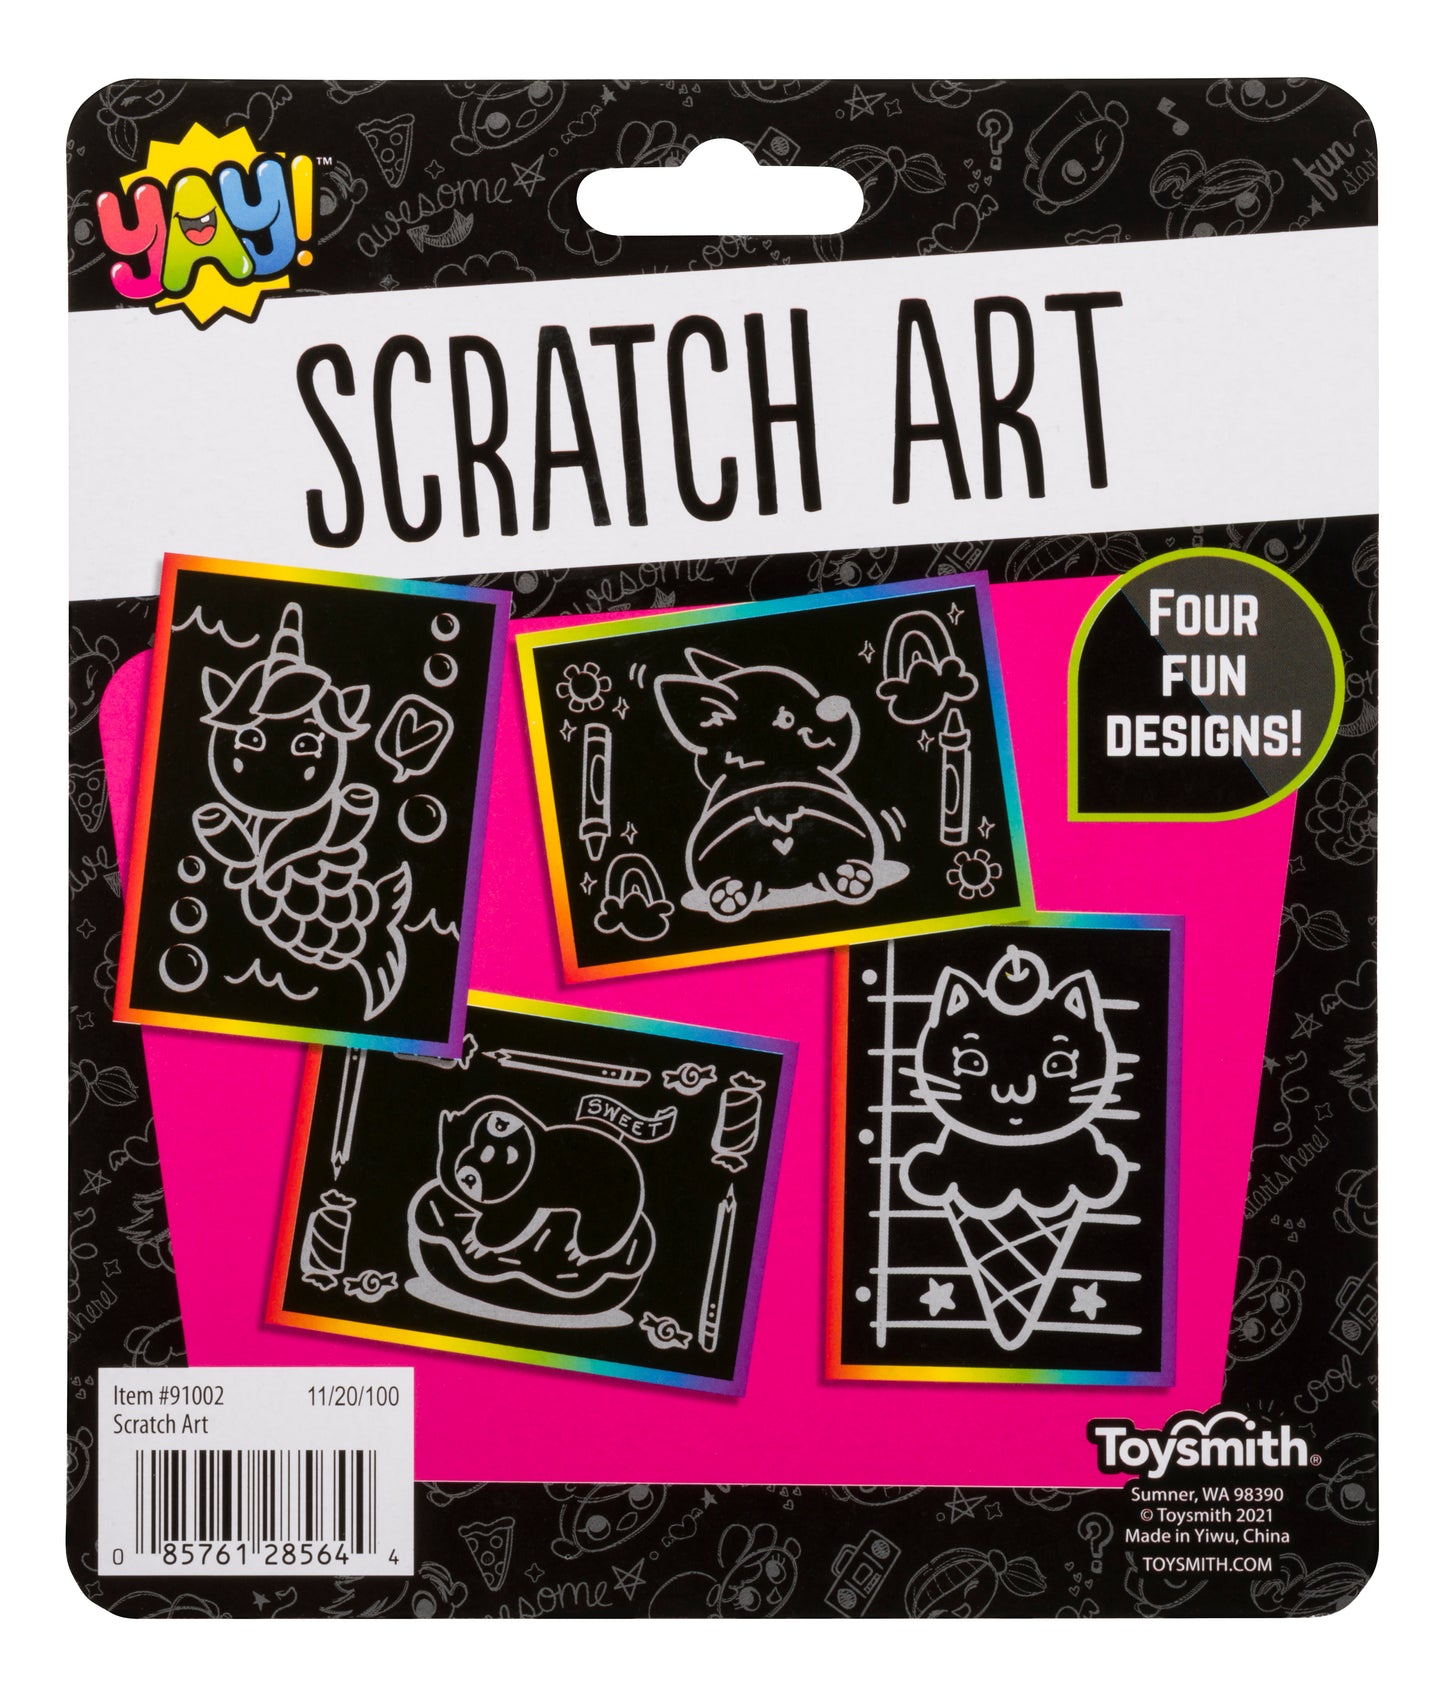 YAY! Scratch Art